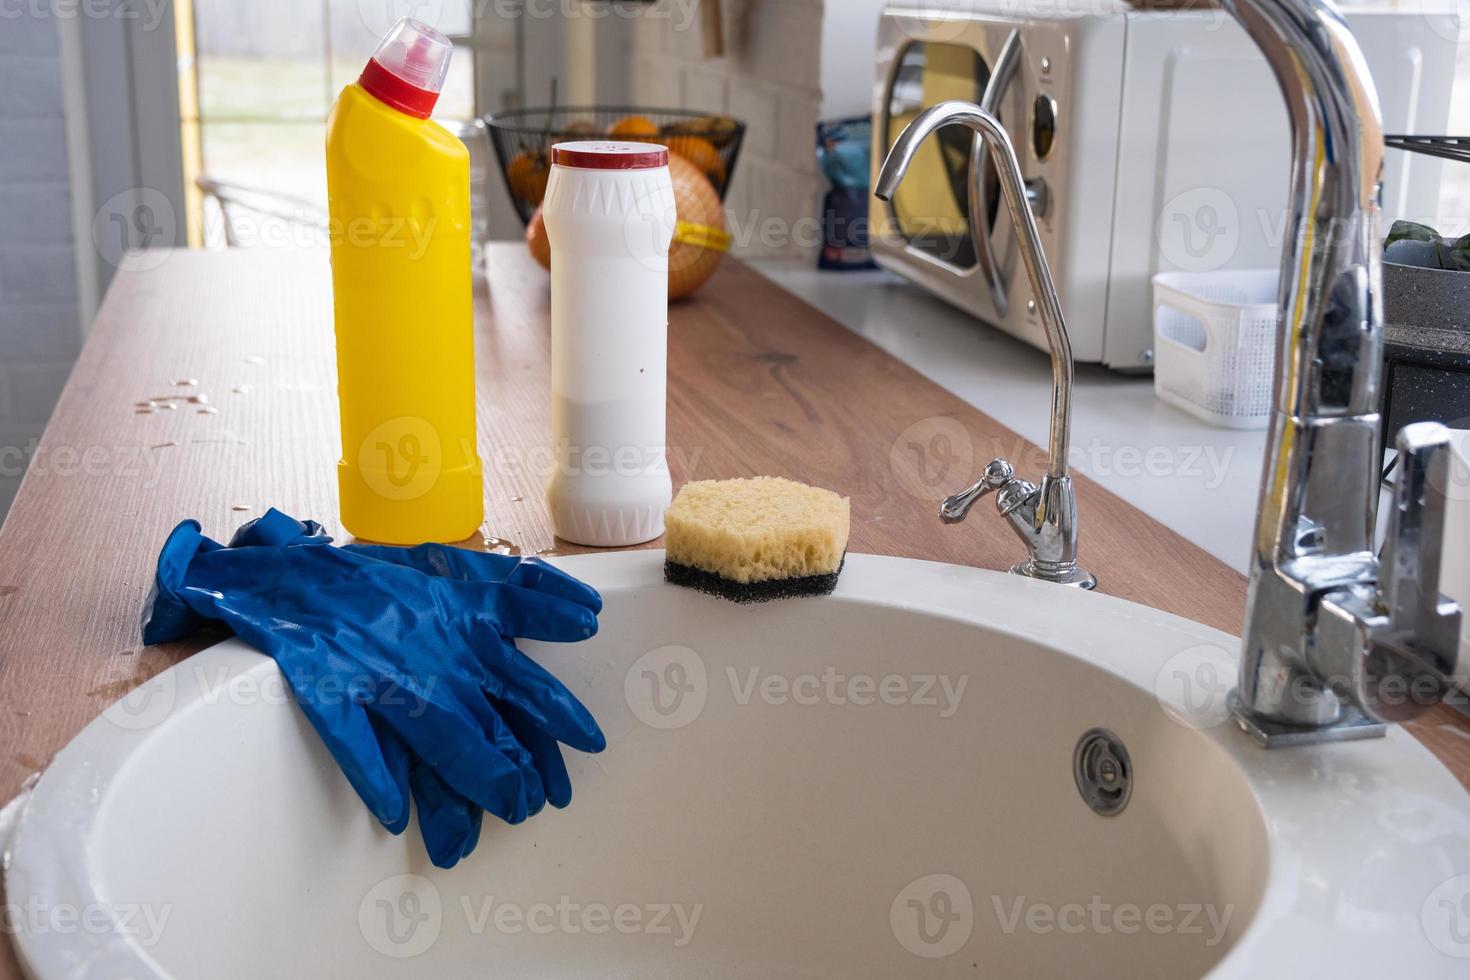 limpieza de la cocina, detergente, polvo seco, esponja, guantes en el fregadero. decoración festiva en la cocina blanca, acogedor interior de la casa foto